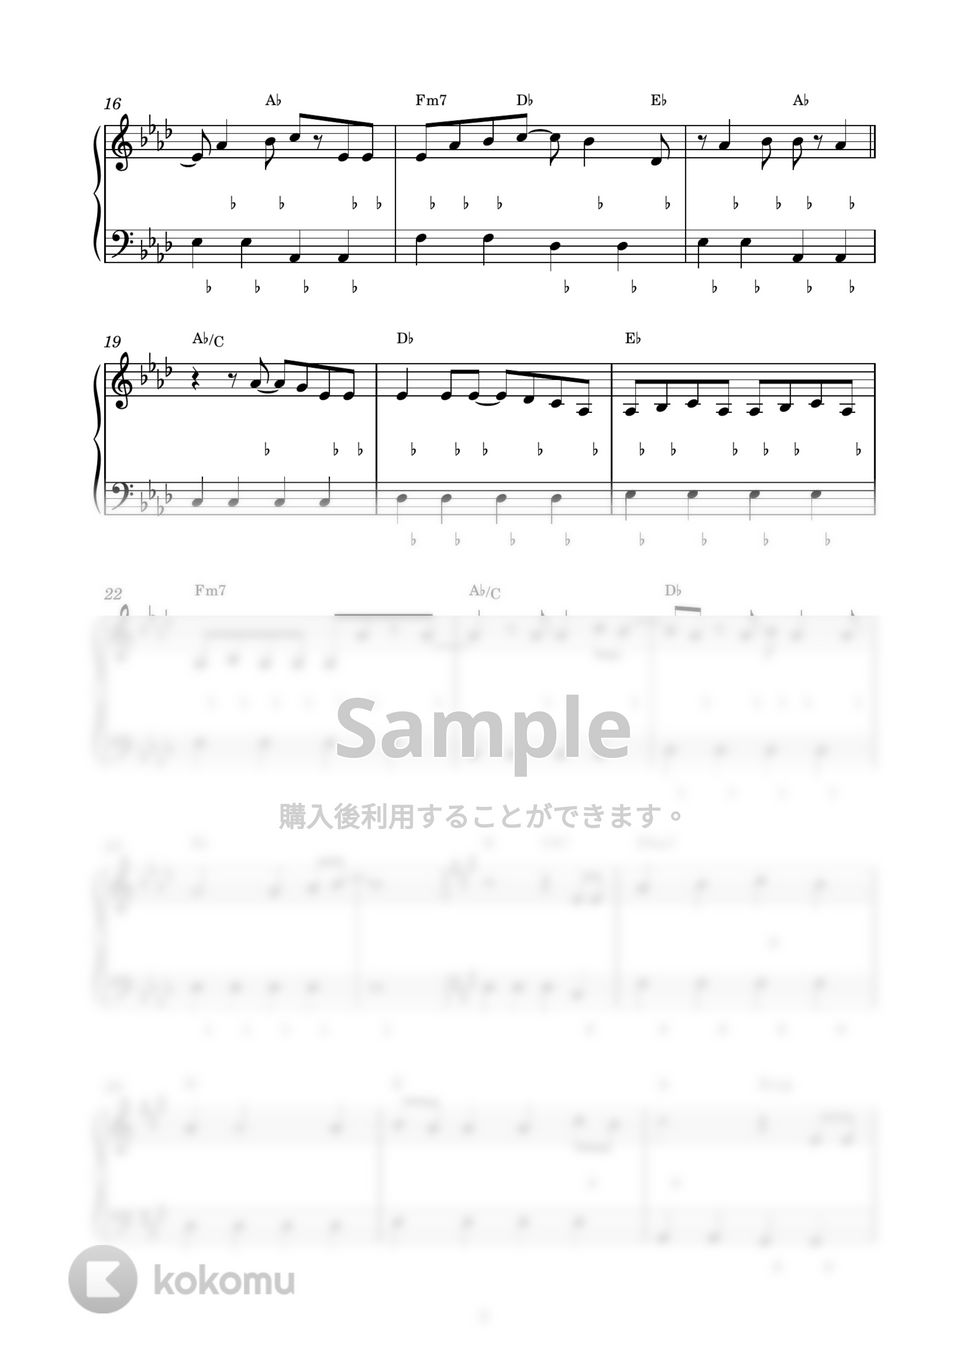 さユり - 花の塔 (ピアノ楽譜 / かんたん両手 / 歌詞付き / ドレミ付き / 初心者向き) by piano.tokyo